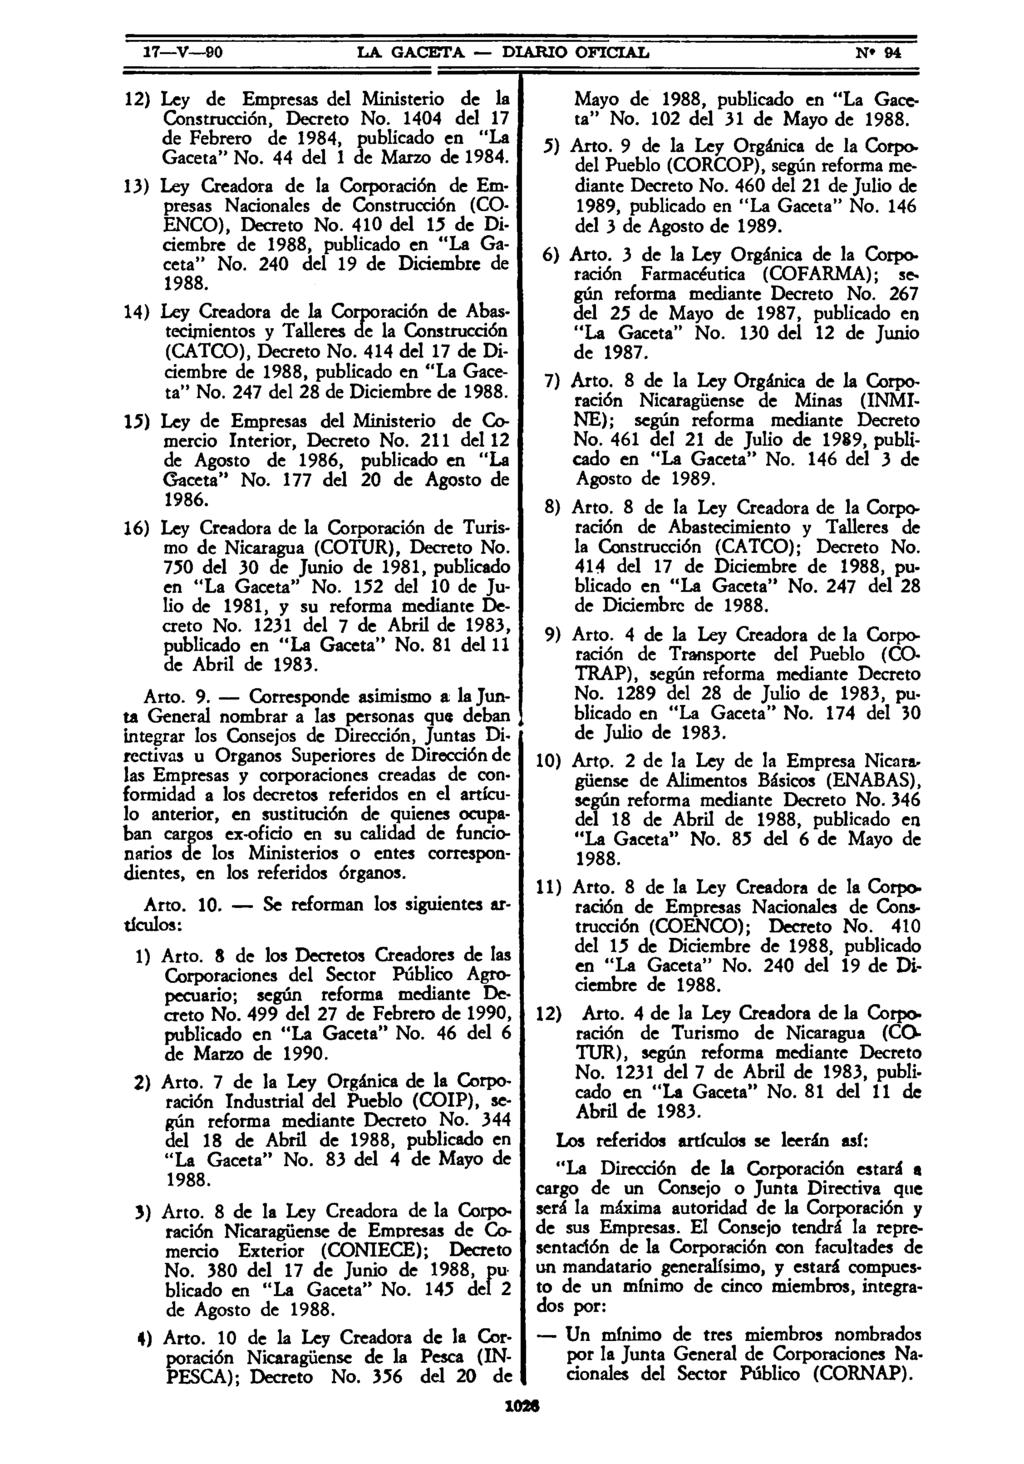 17 V-90 LA GACETA DIARIO OFICIAL N 94 12) Ley de Empresas del Ministerio de la Construcción, Decreto No. 1404 del 17 de Febrero de 1984, publicado en "La Gaceta" No. 44 del 1 de Marzo de 1984.